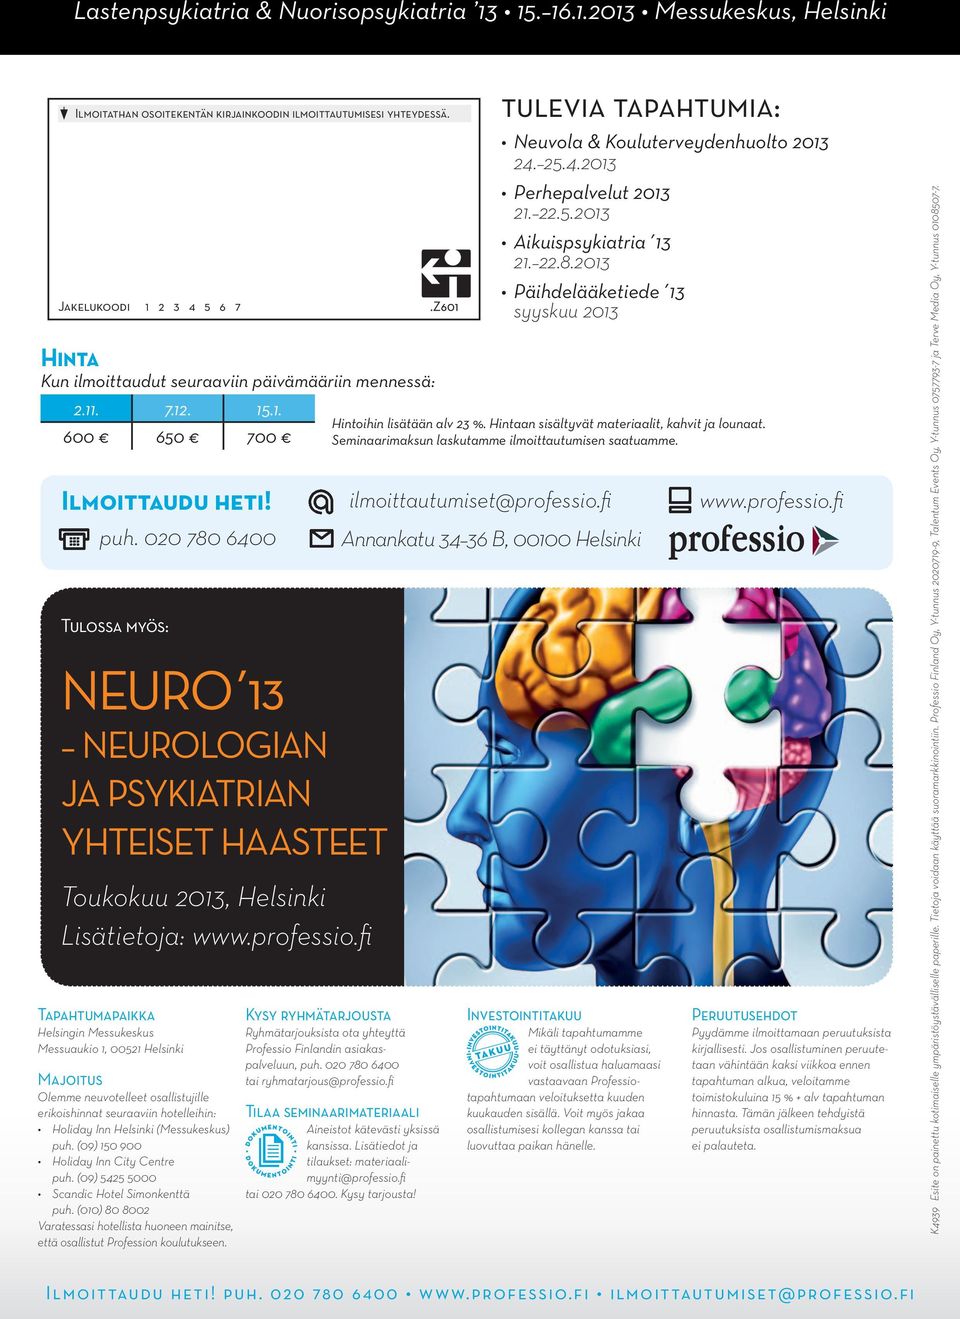 020 780 6400 Tulossa myös: Neuro 13 Neurologian ja psykiatrian yhteiset haasteet Toukokuu 2013, Helsinki Lisätietoja: www.professio.